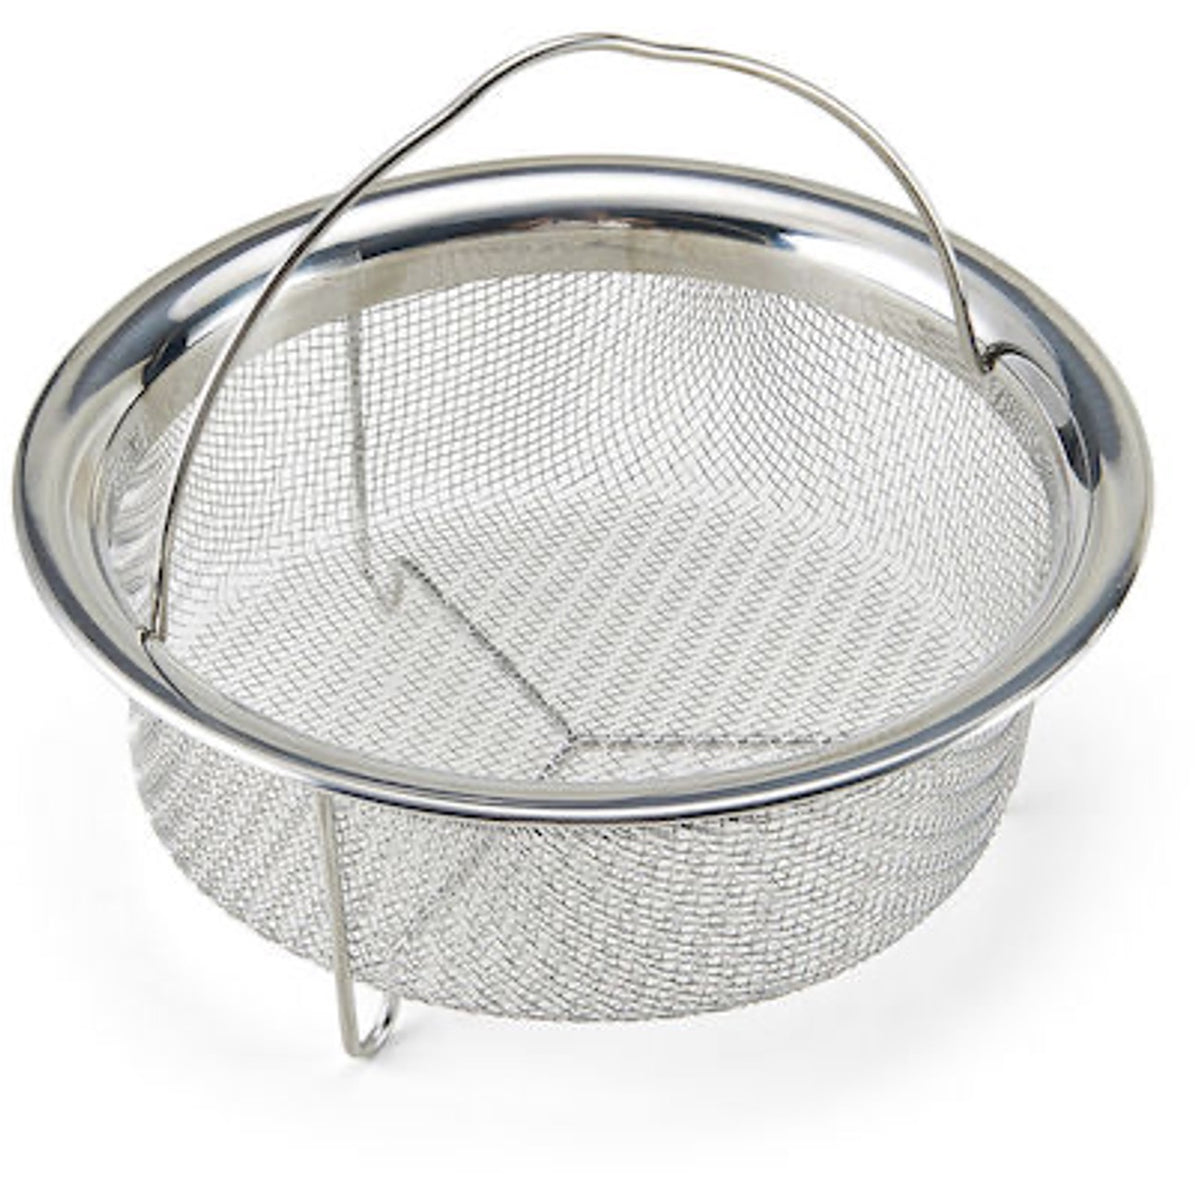 Prep Solutions Steamer Basket